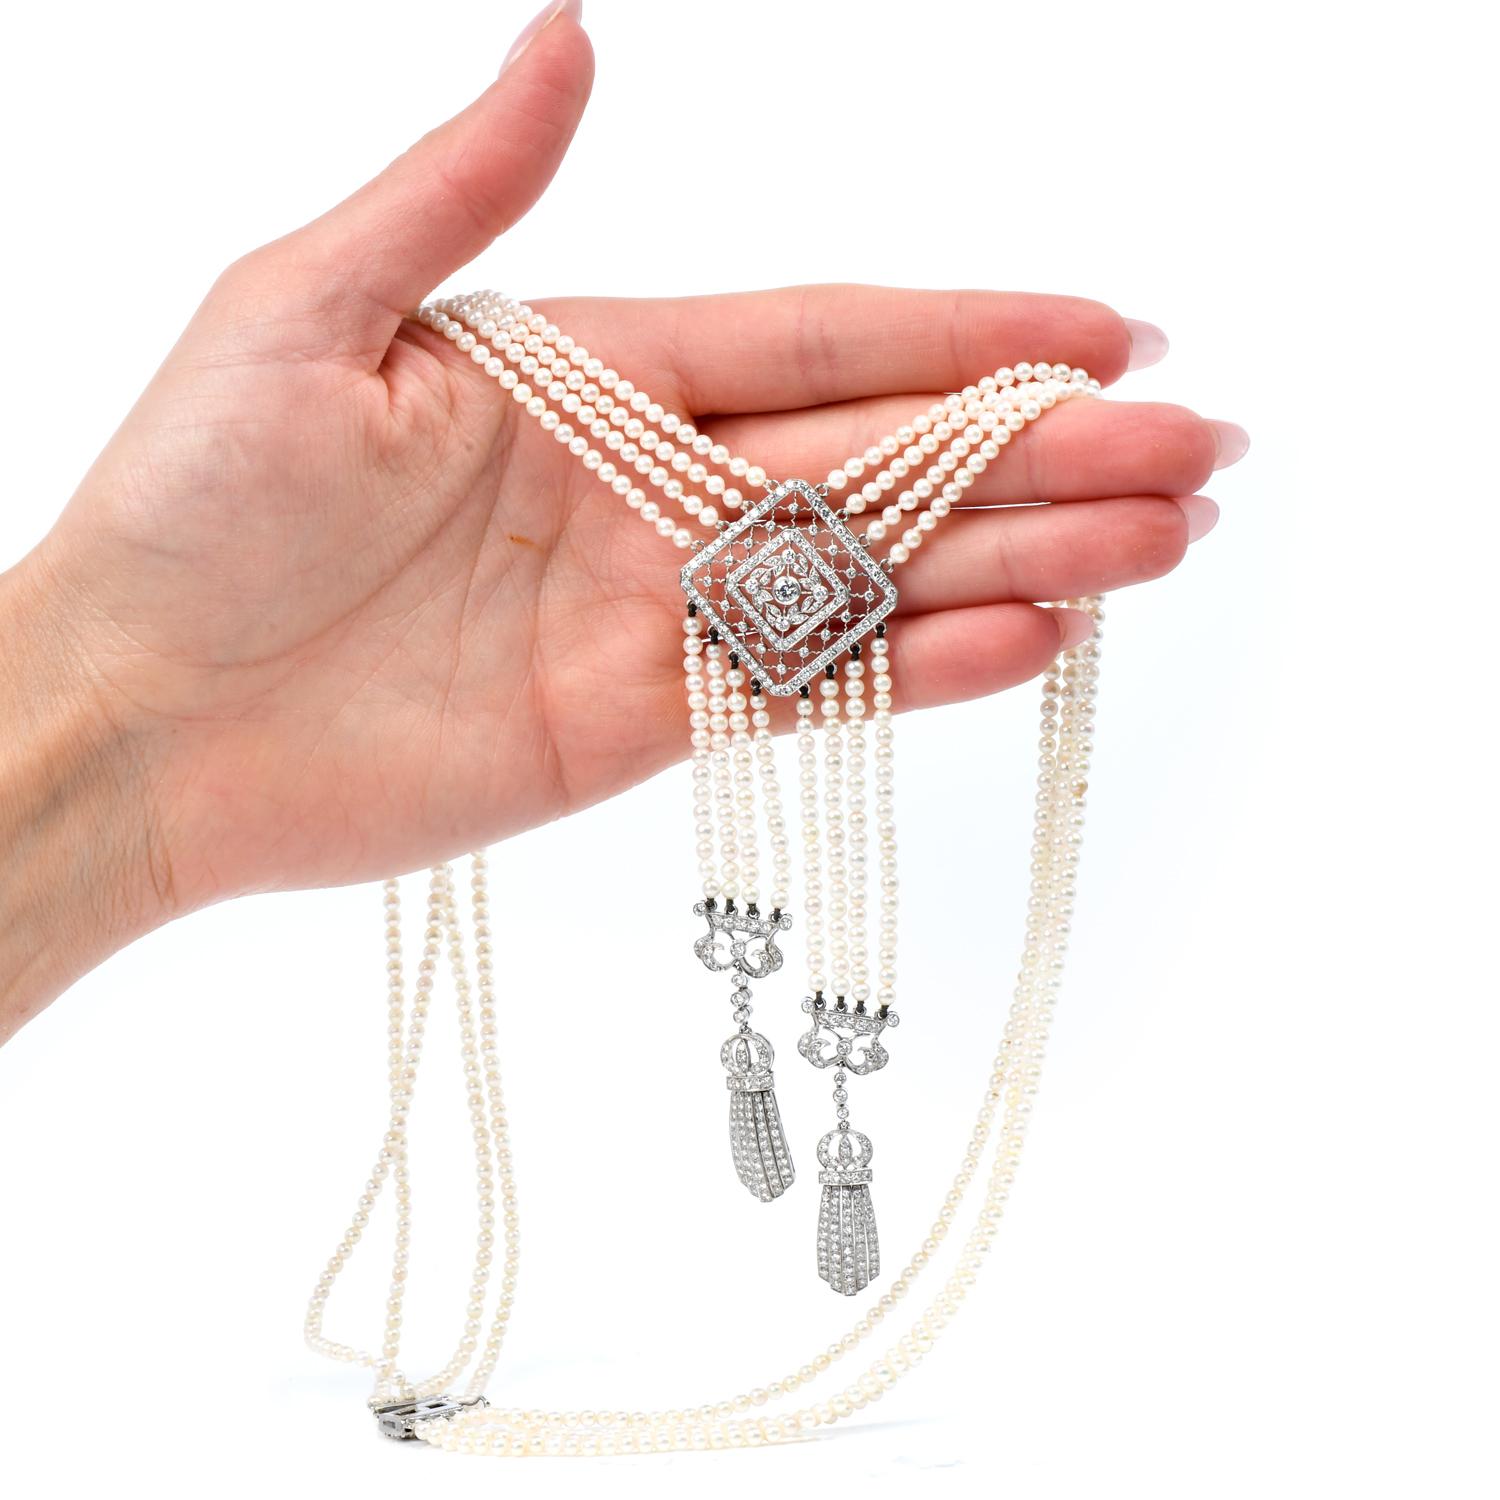 Diese exquisite Tassel Desing Necklace bringt den Look der 1920er Jahre in die moderne Welt. 

Ein Tanz von cremefarbenen, 3 mm großen, echten Perlen schmückt das Stück und die mehreren Stränge. 
Eine Art-Déco-inspirierte Schließe, schleifenförmige